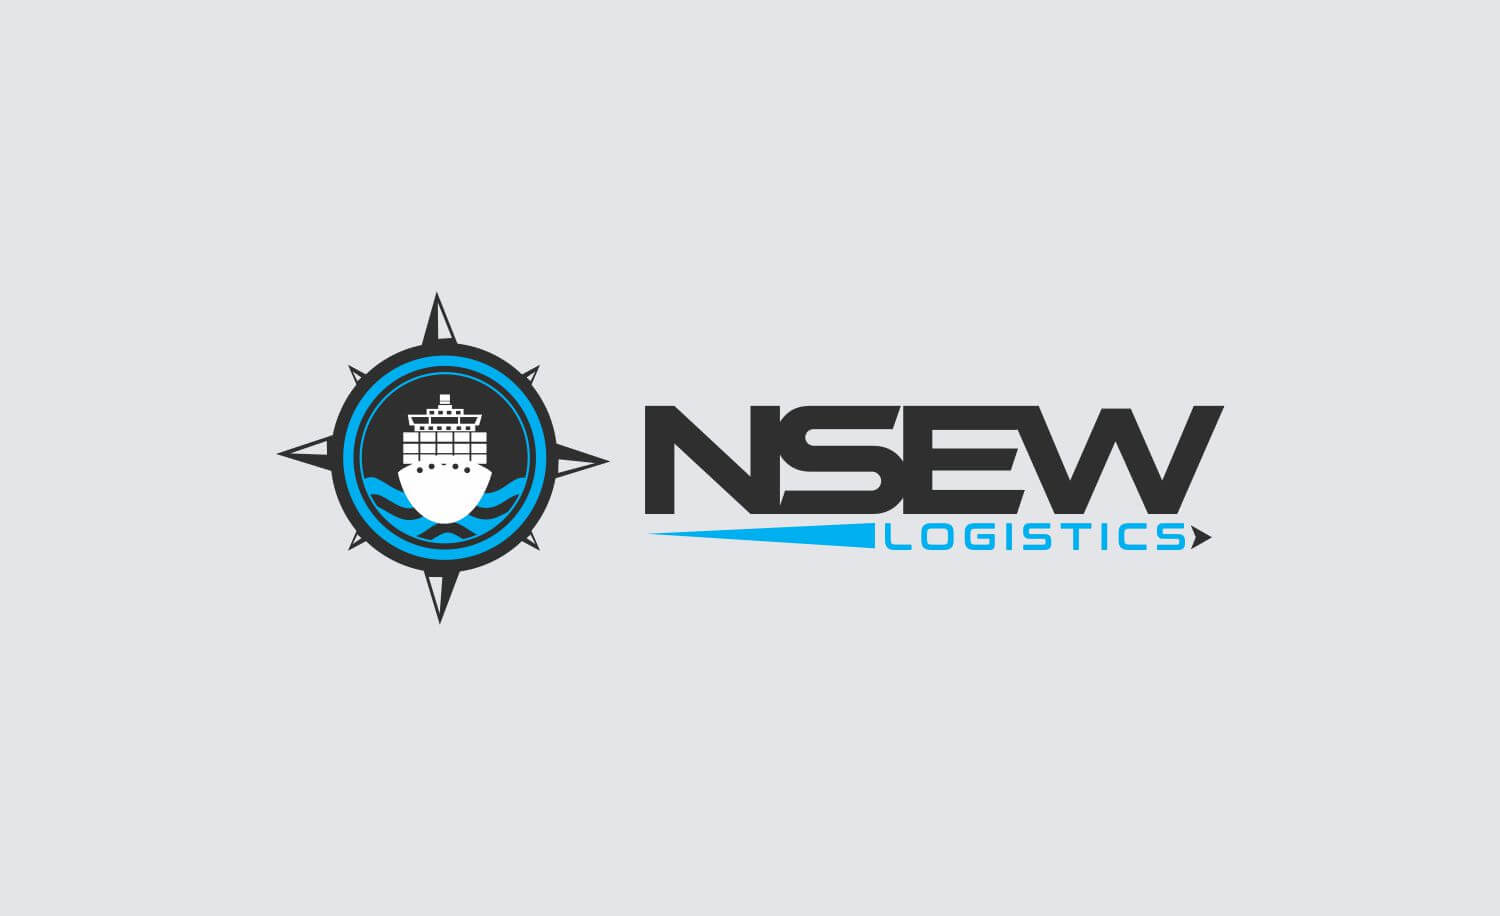 NSEW Logistics